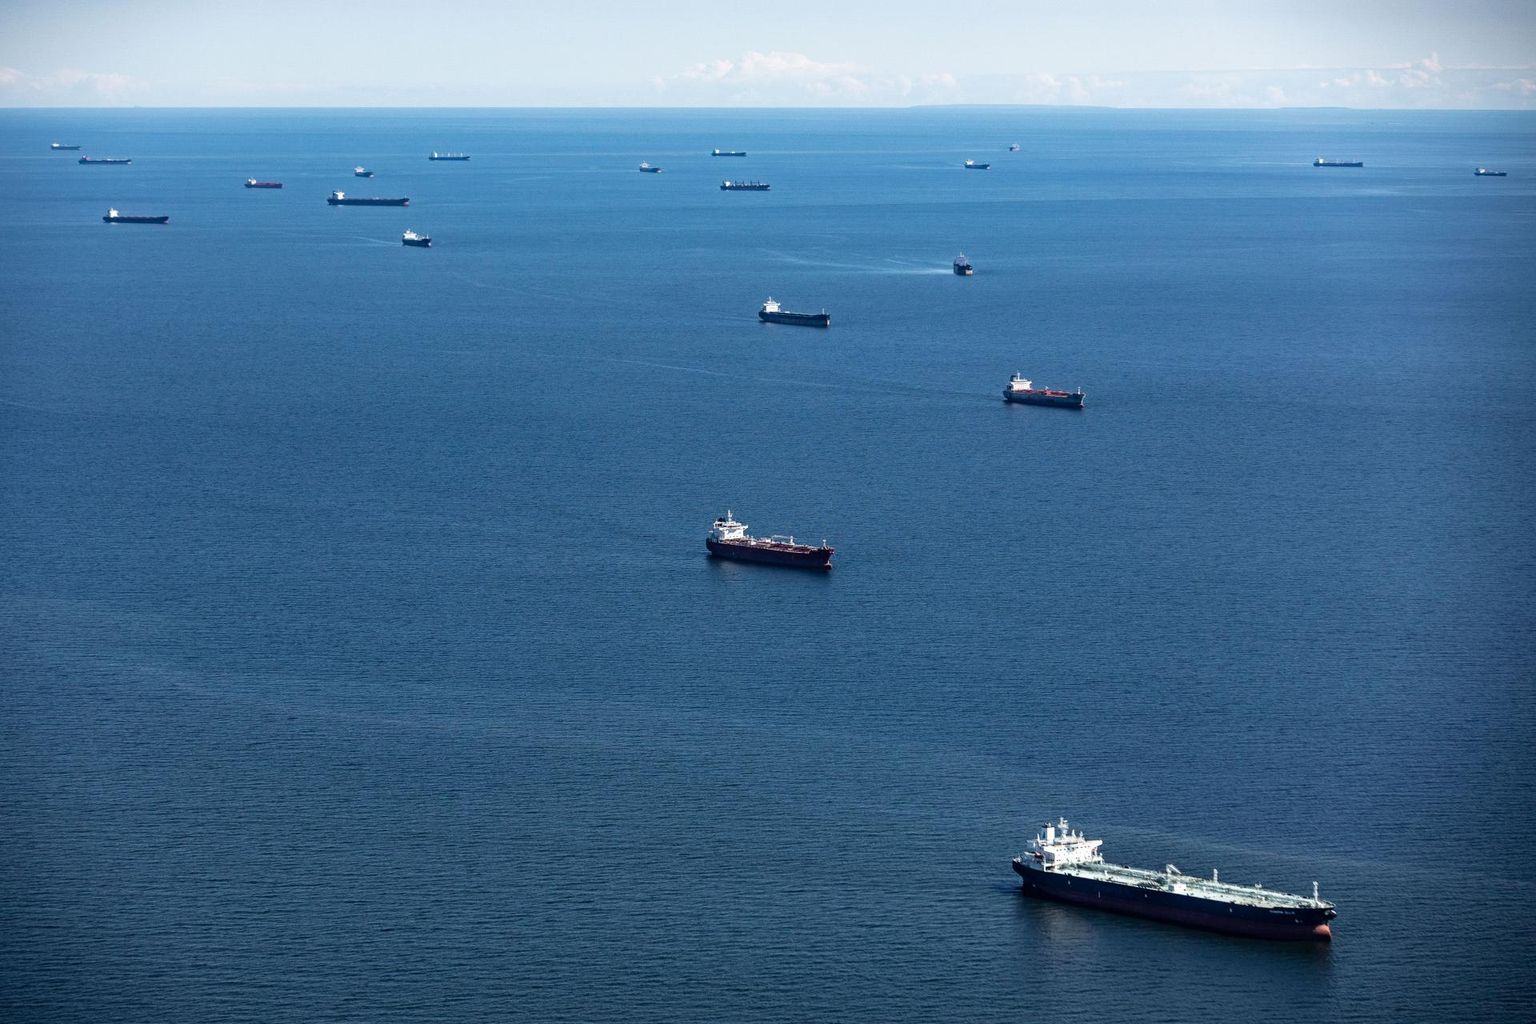 Venemaa sadamatesse pääsu ootavate tankerite ja kaubalaevade mitteametlik ankruala Eesti majandusvööndisse kuuluval Soome lahe osal. Pühapäeval ootas seal 21 laeva.